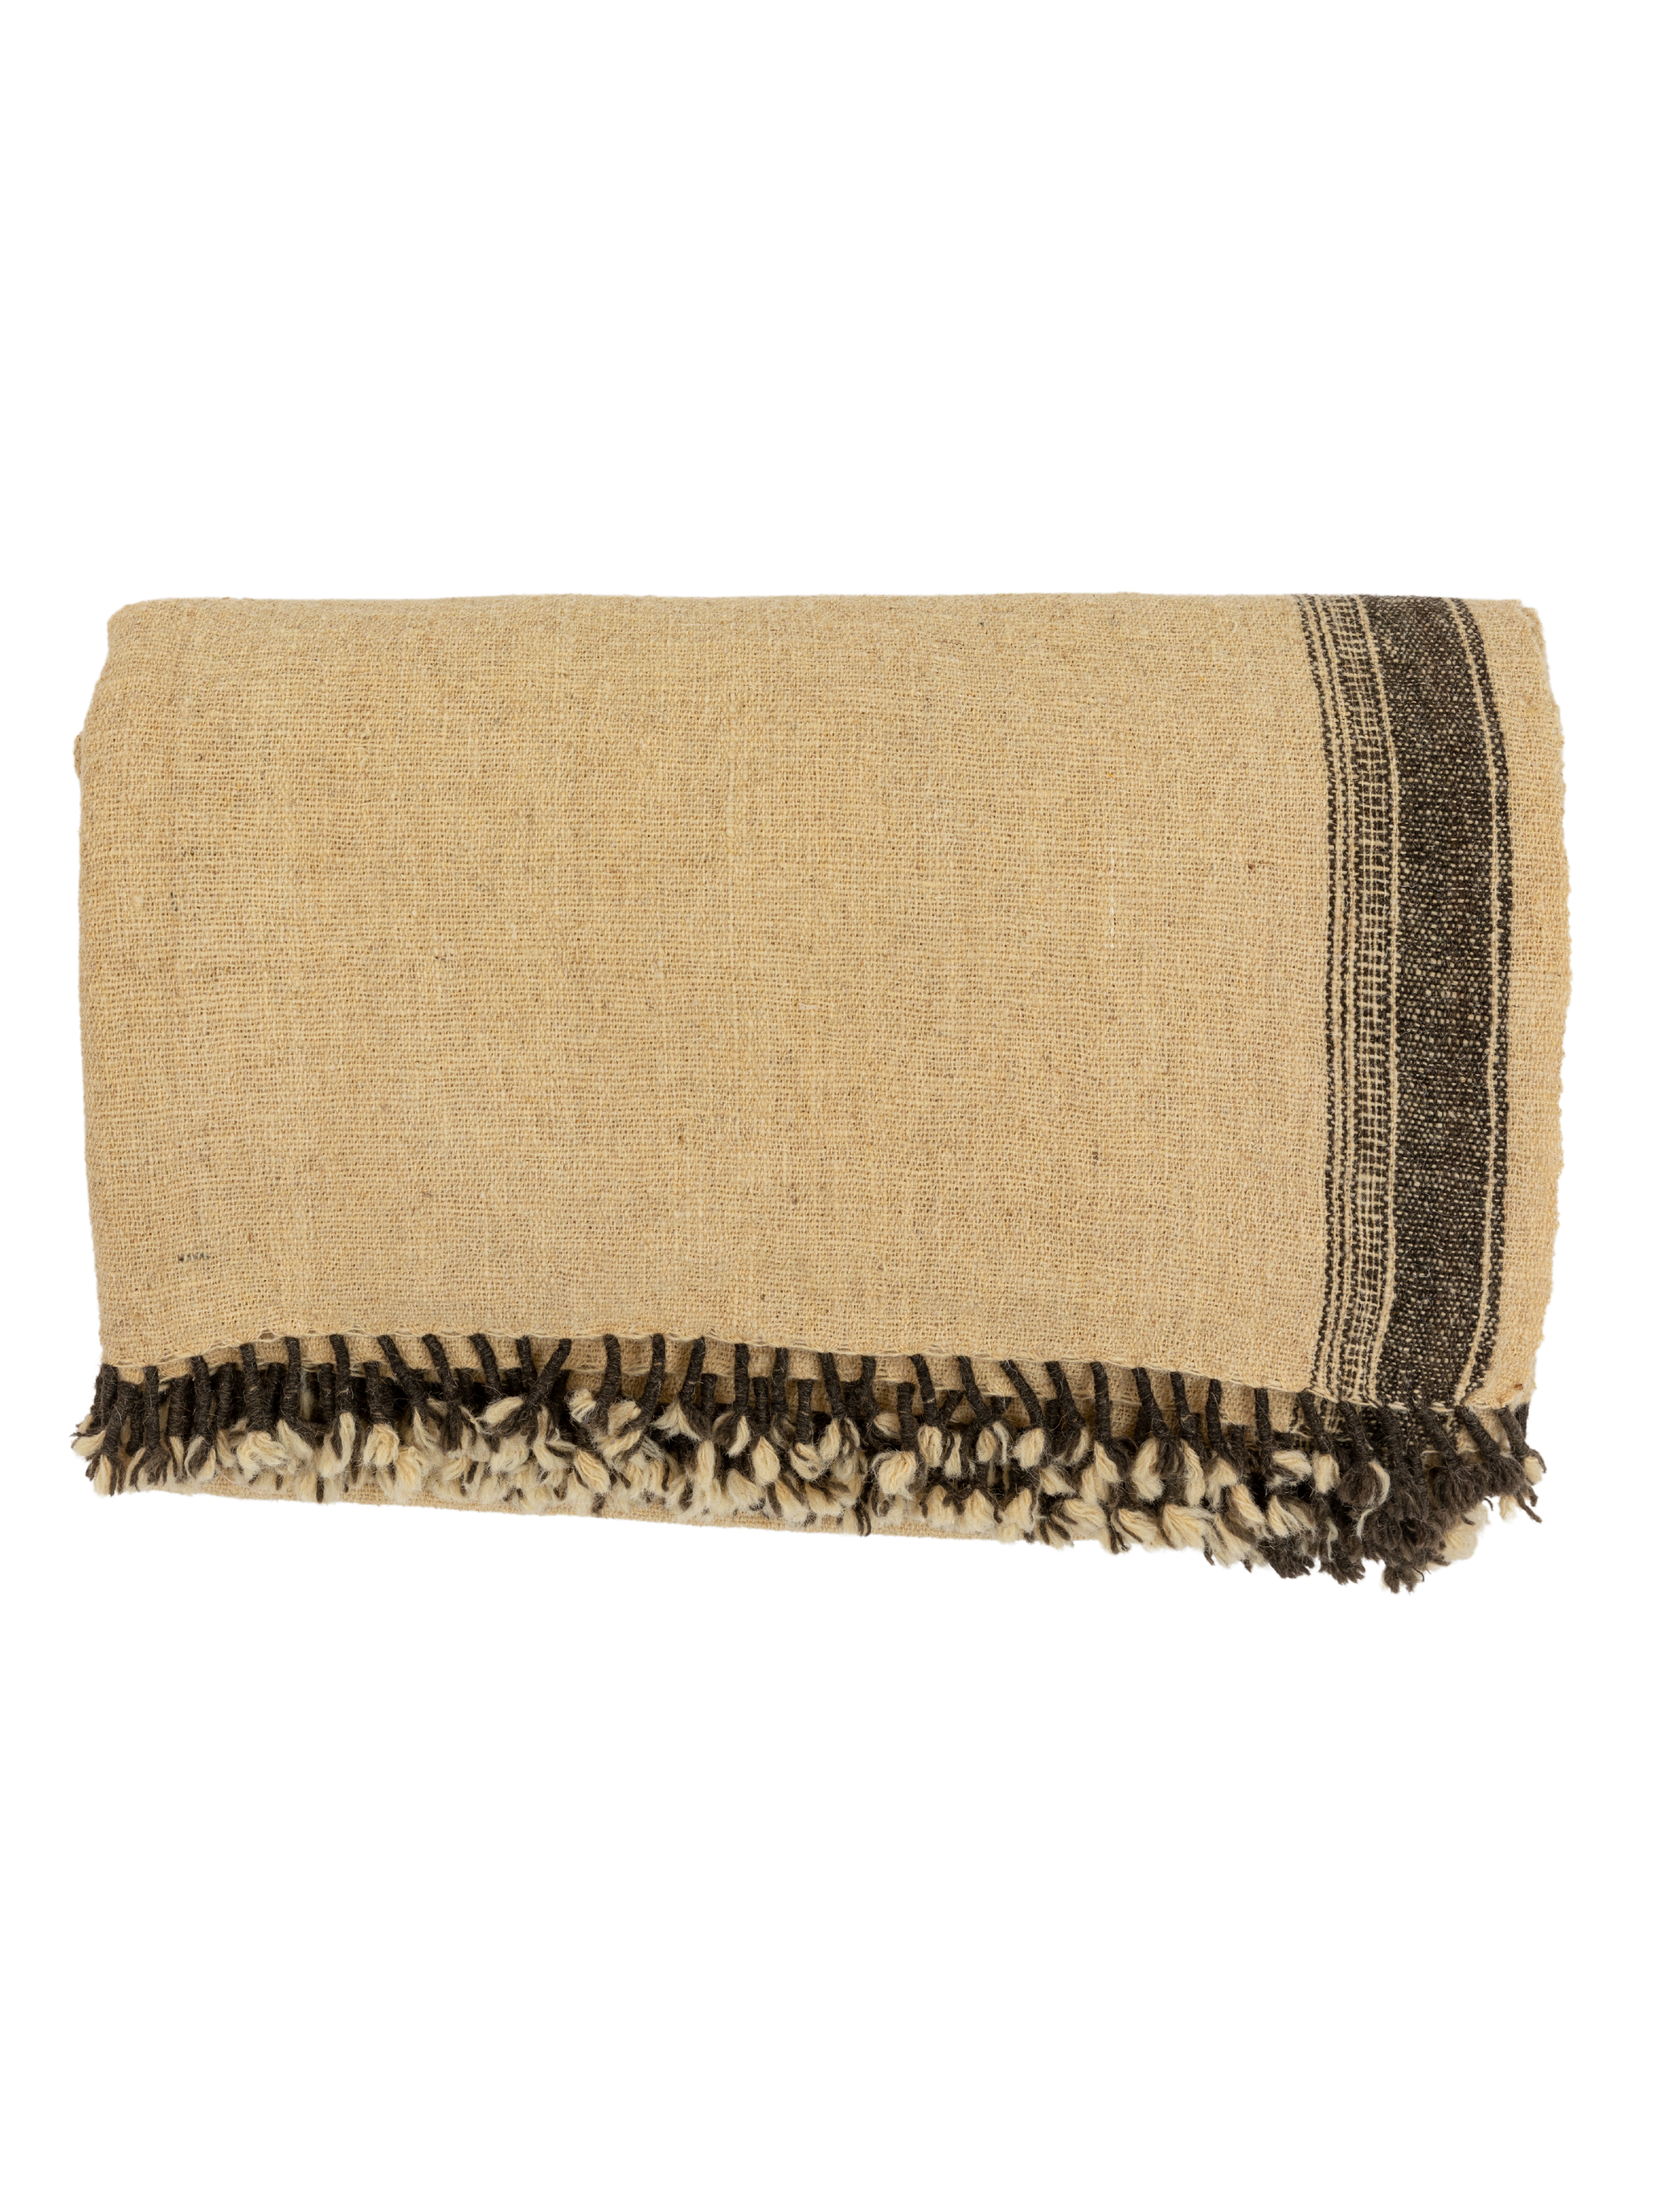 Kutch Ivory Blanket